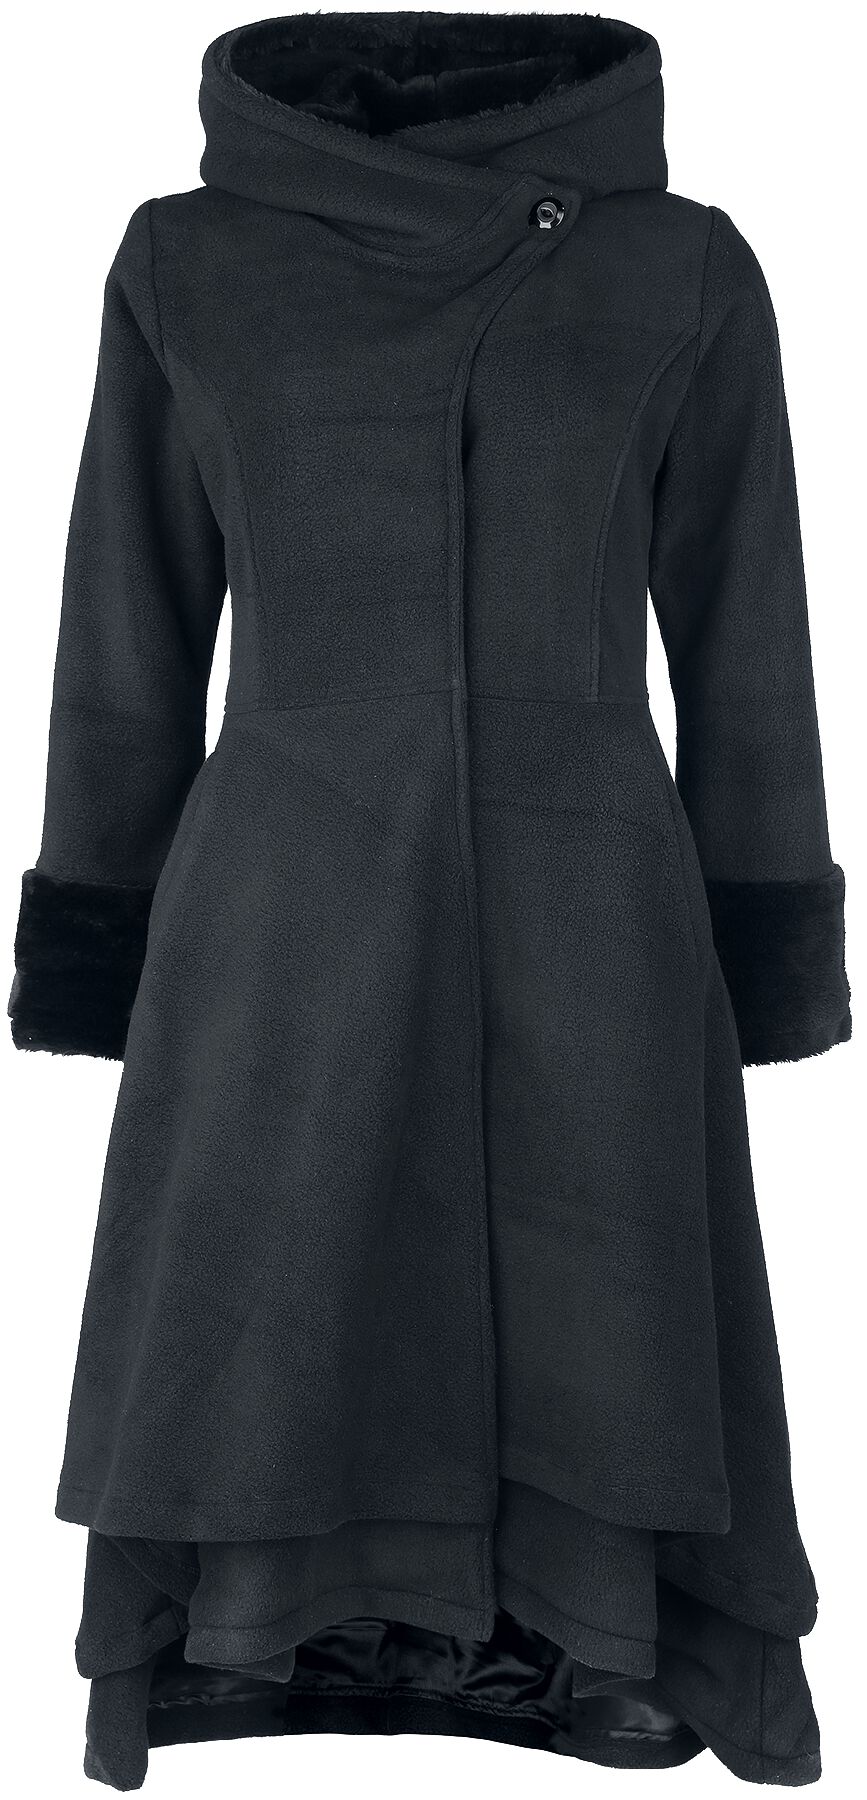 Vixxsin - Gothic Mantel - Gloaming Coat - XS bis 4XL - für Damen - Größe L - schwarz von Vixxsin